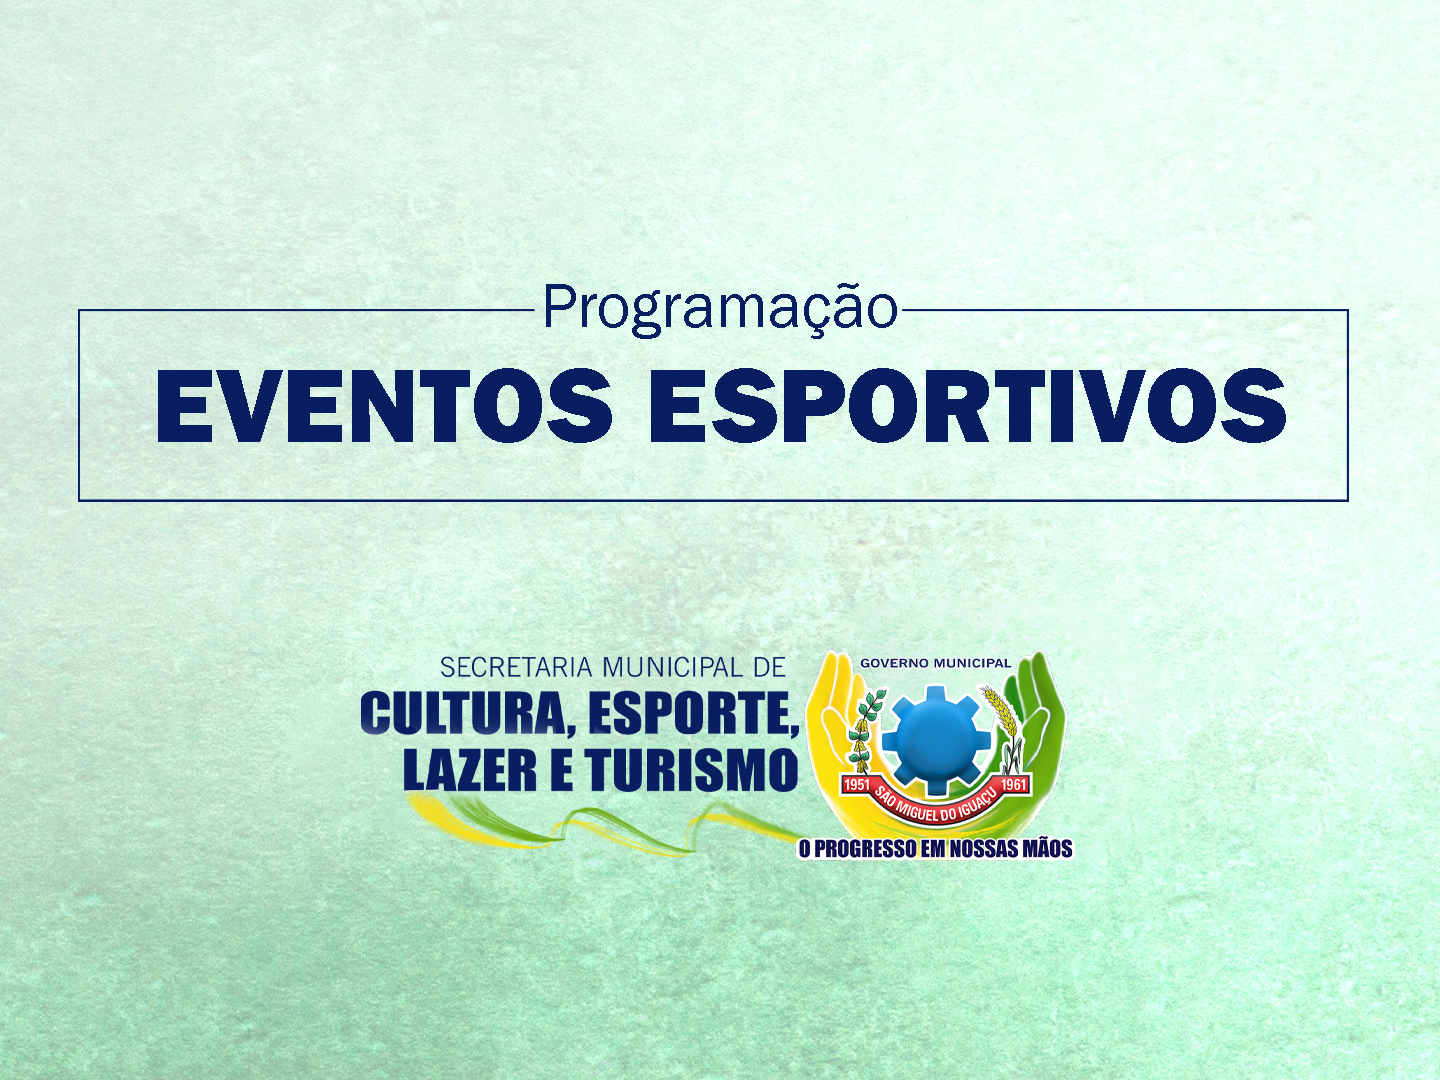 Descubra os Destaques da Agenda Esportiva de São Miguel do Iguaçu! 🏆🎣